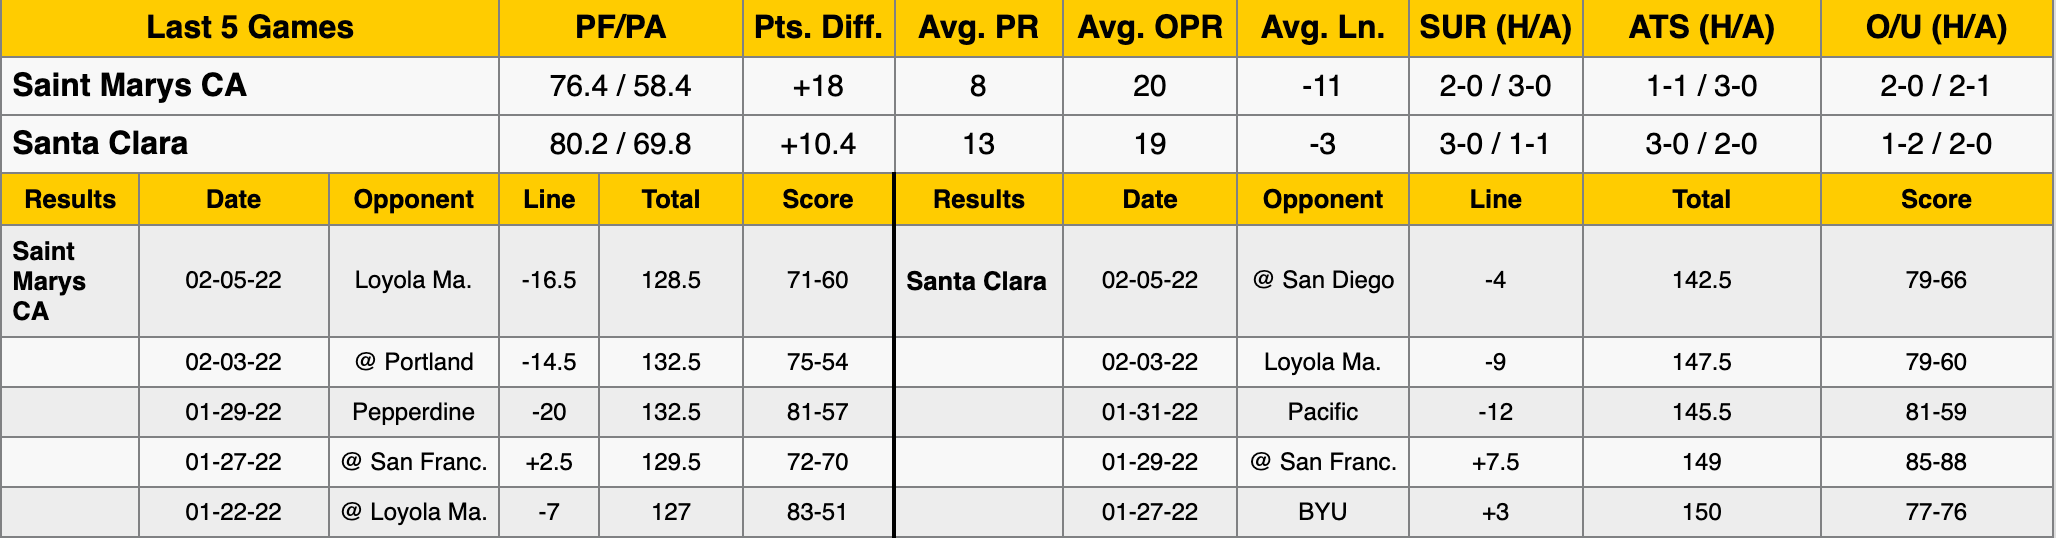 Saint Mary's vs Santa Clara Data